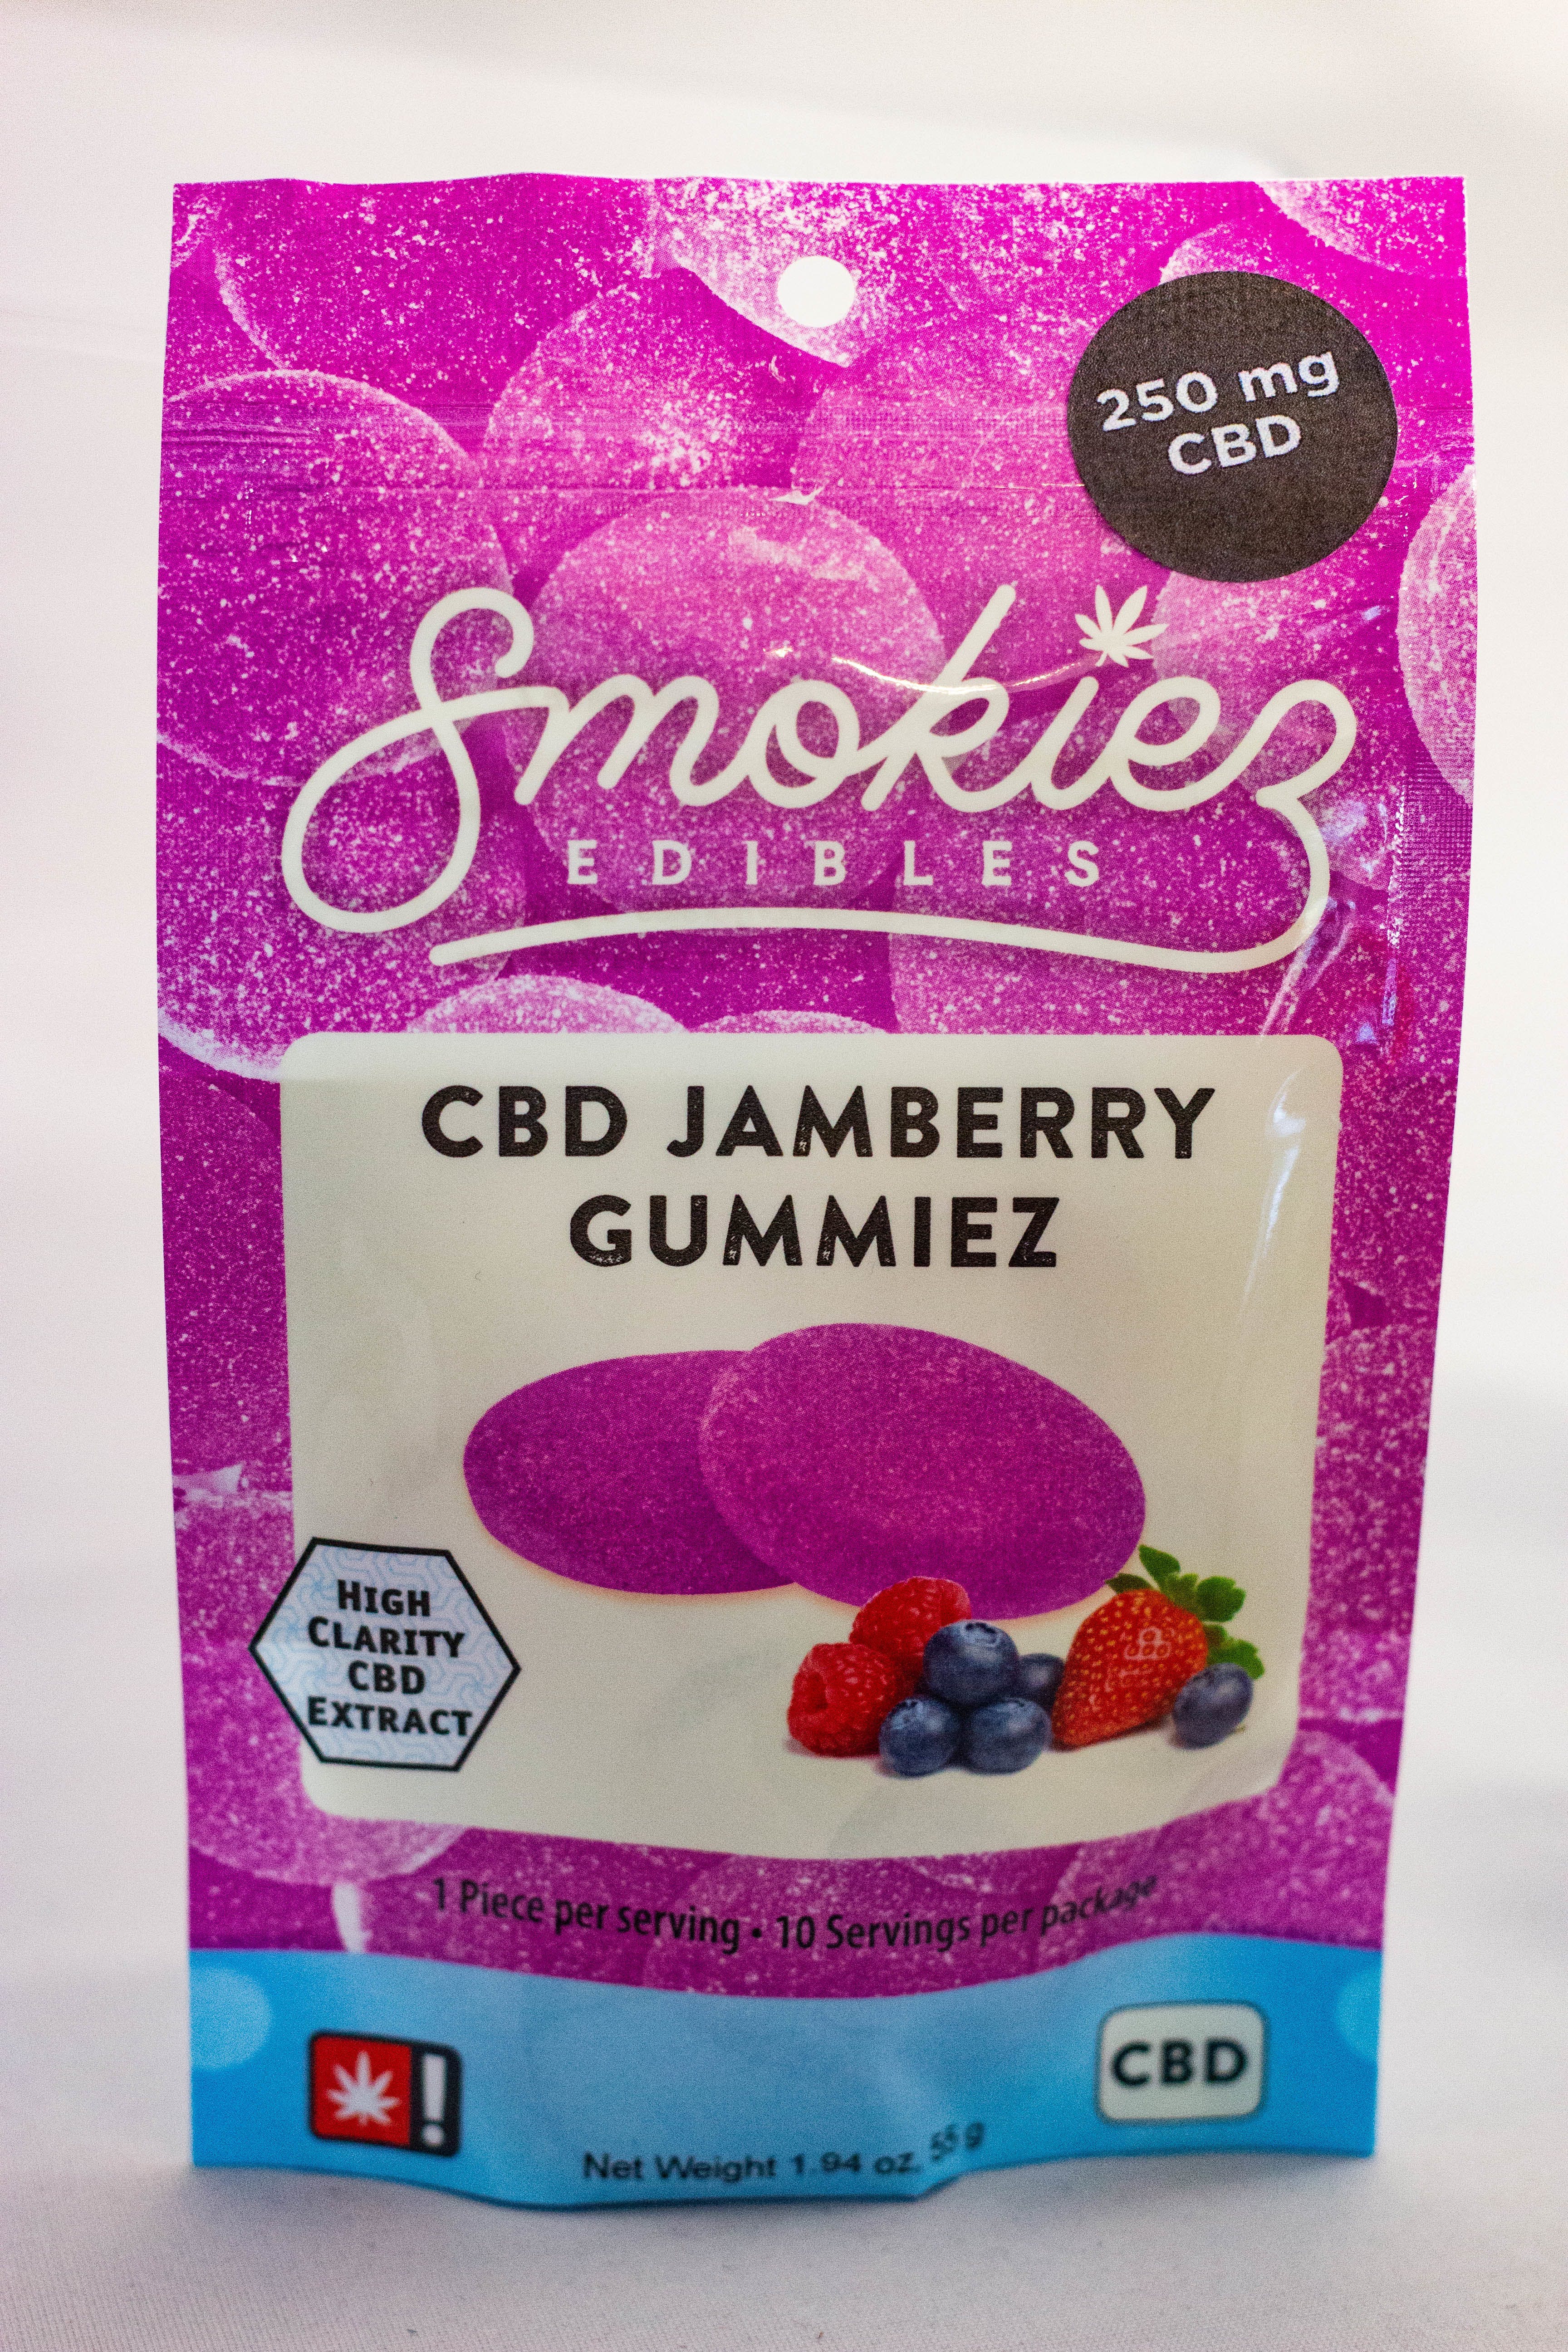 edible-cbd-jamberry-gummiez-by-smokiez